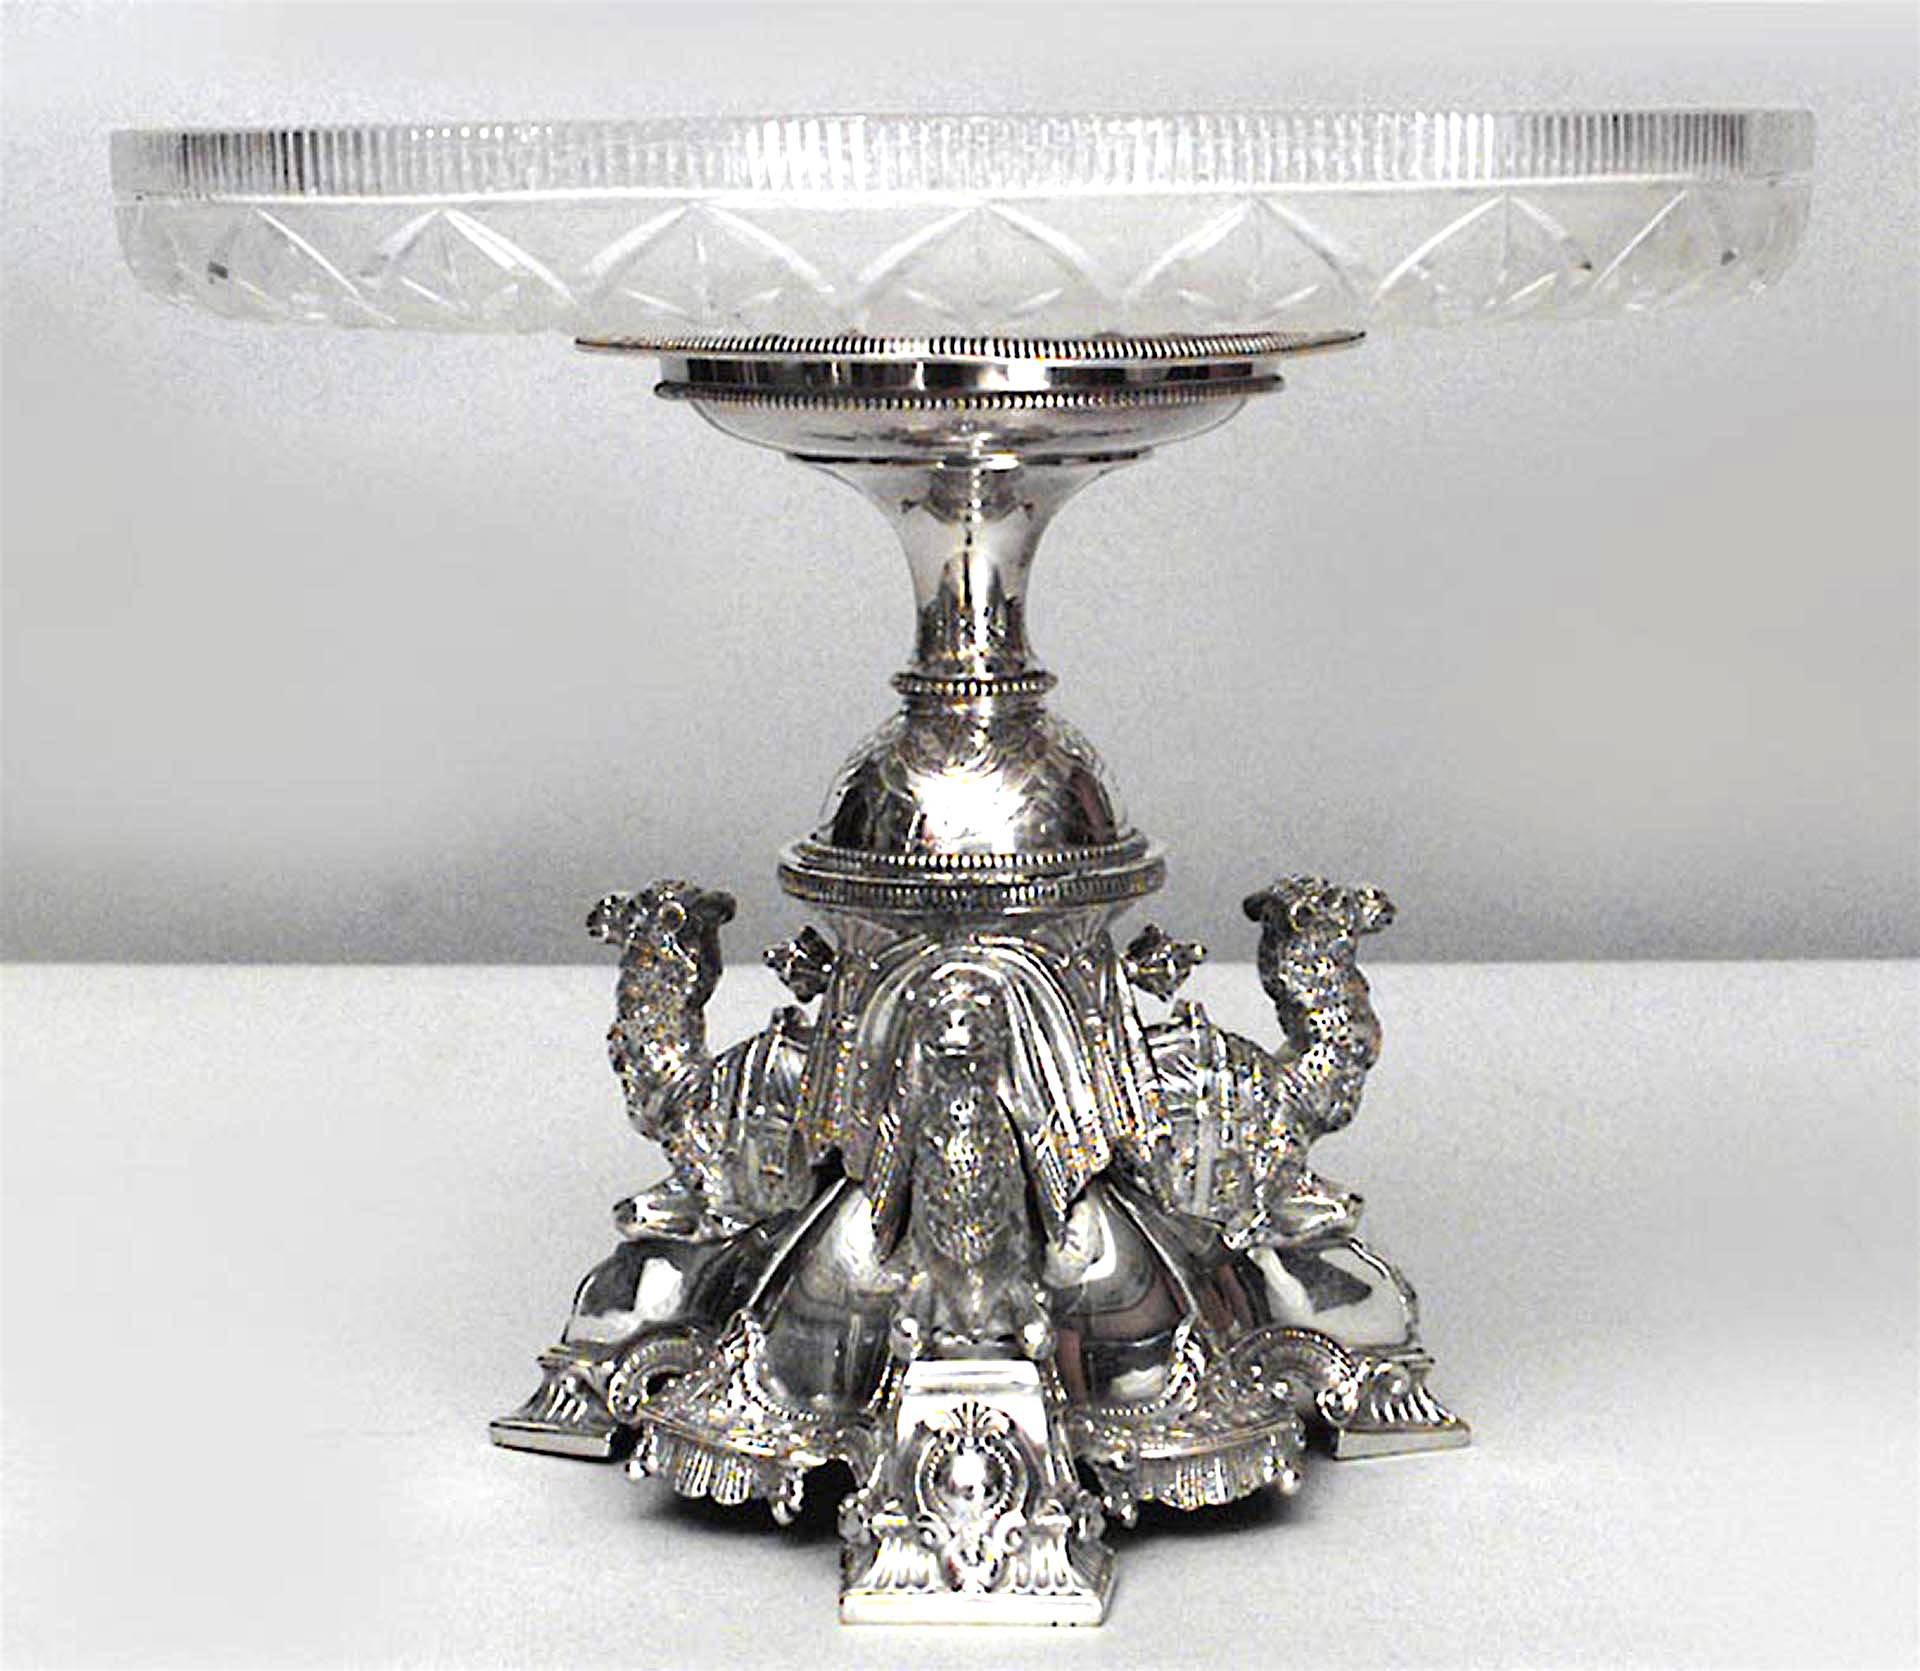 Paire de centres de table anglais victoriens (datés de 1865) en métal argenté avec des chameaux agenouillés sur la base tripartite sous un plat en verre taillé (PRIX PAR PAIRE)
